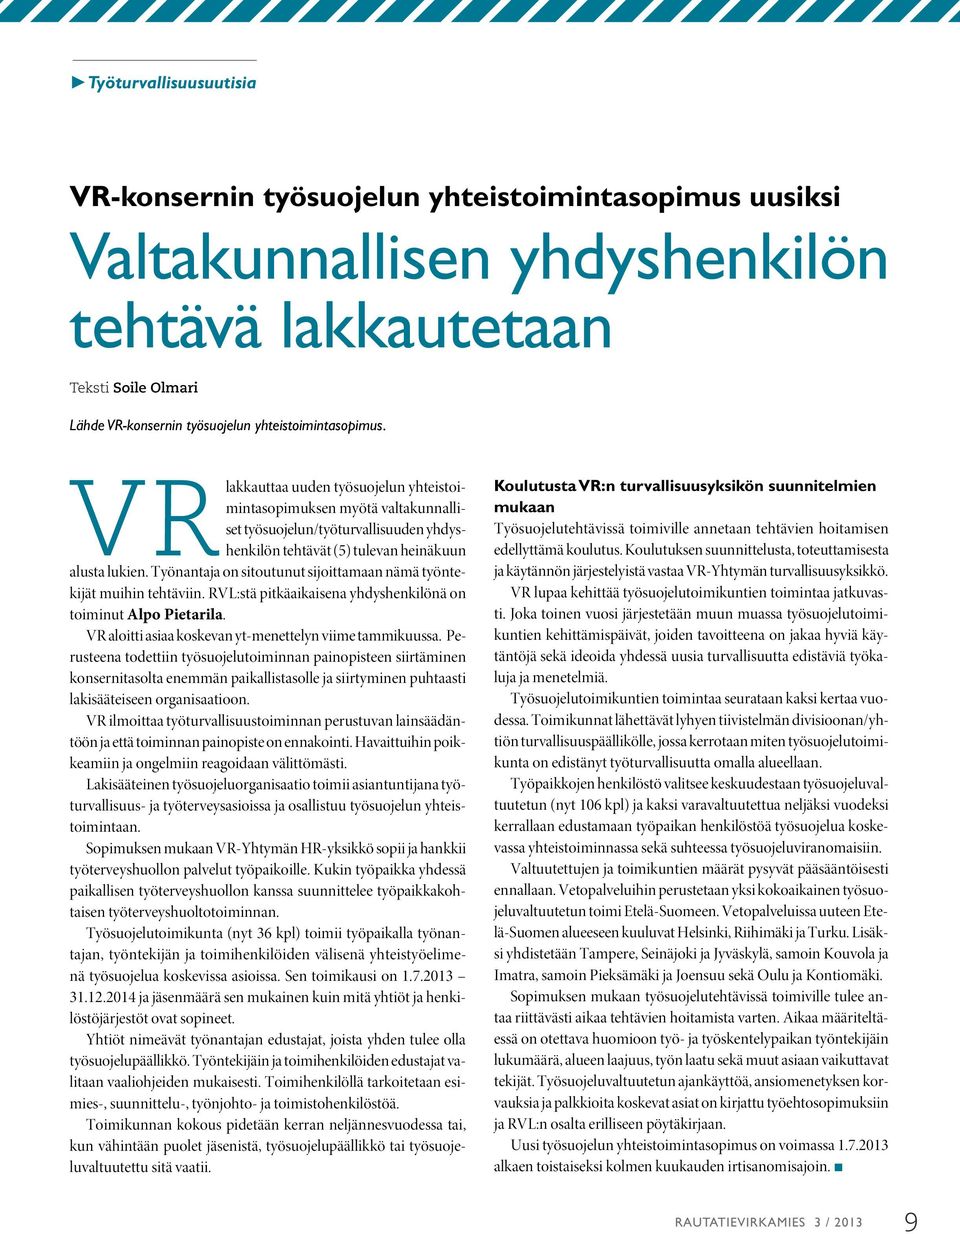 Työnantaja on sitoutunut sijoittamaan nämä työntekijät muihin tehtäviin. RVL:stä pitkäaikaisena yhdyshenkilönä on toiminut Alpo Pietarila. VR aloitti asiaa koskevan yt-menettelyn viime tammikuussa.